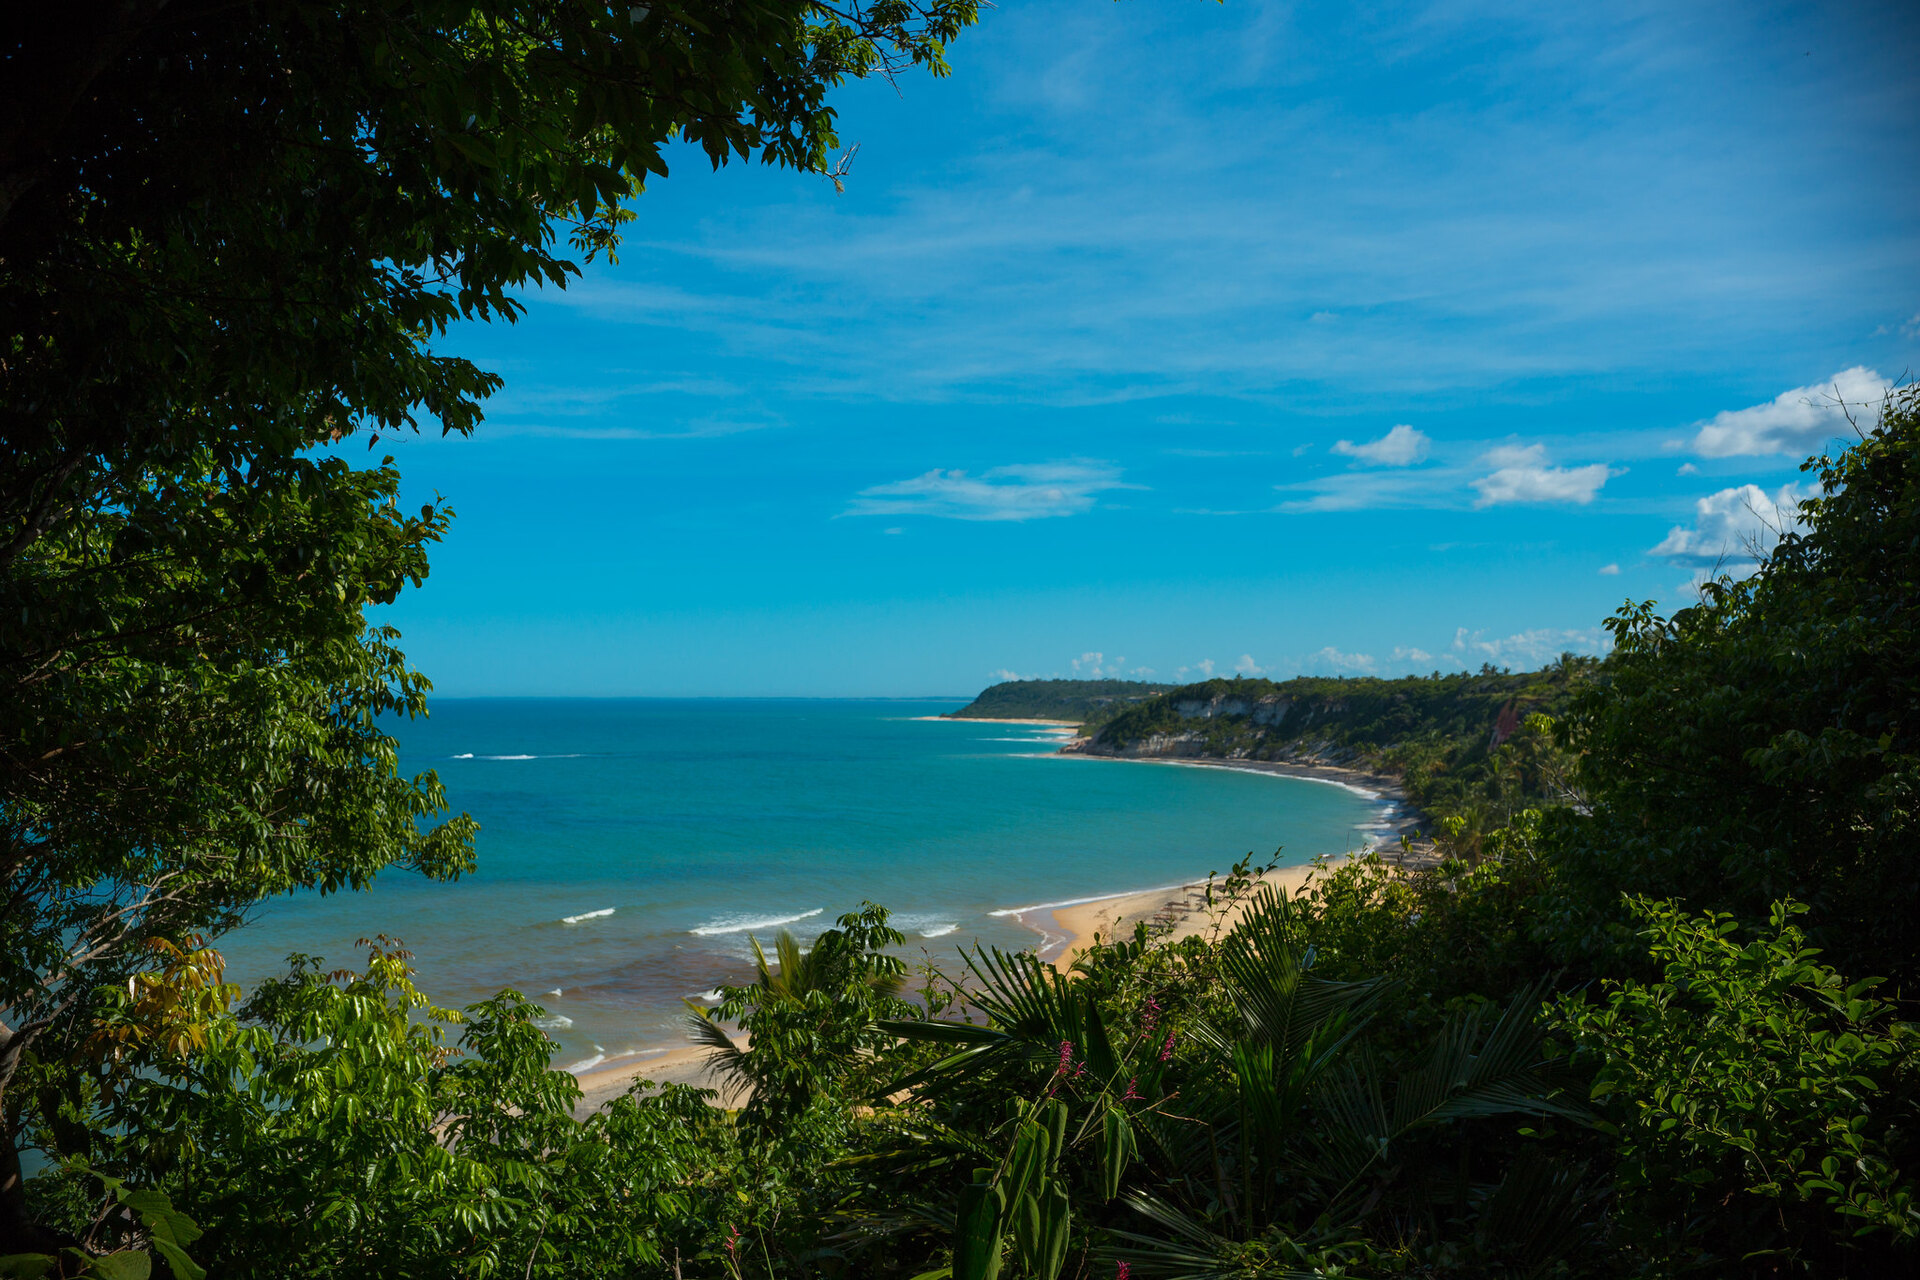 Vista da praia do Espelho, no distrito de Trancoso, no sul da Bahia